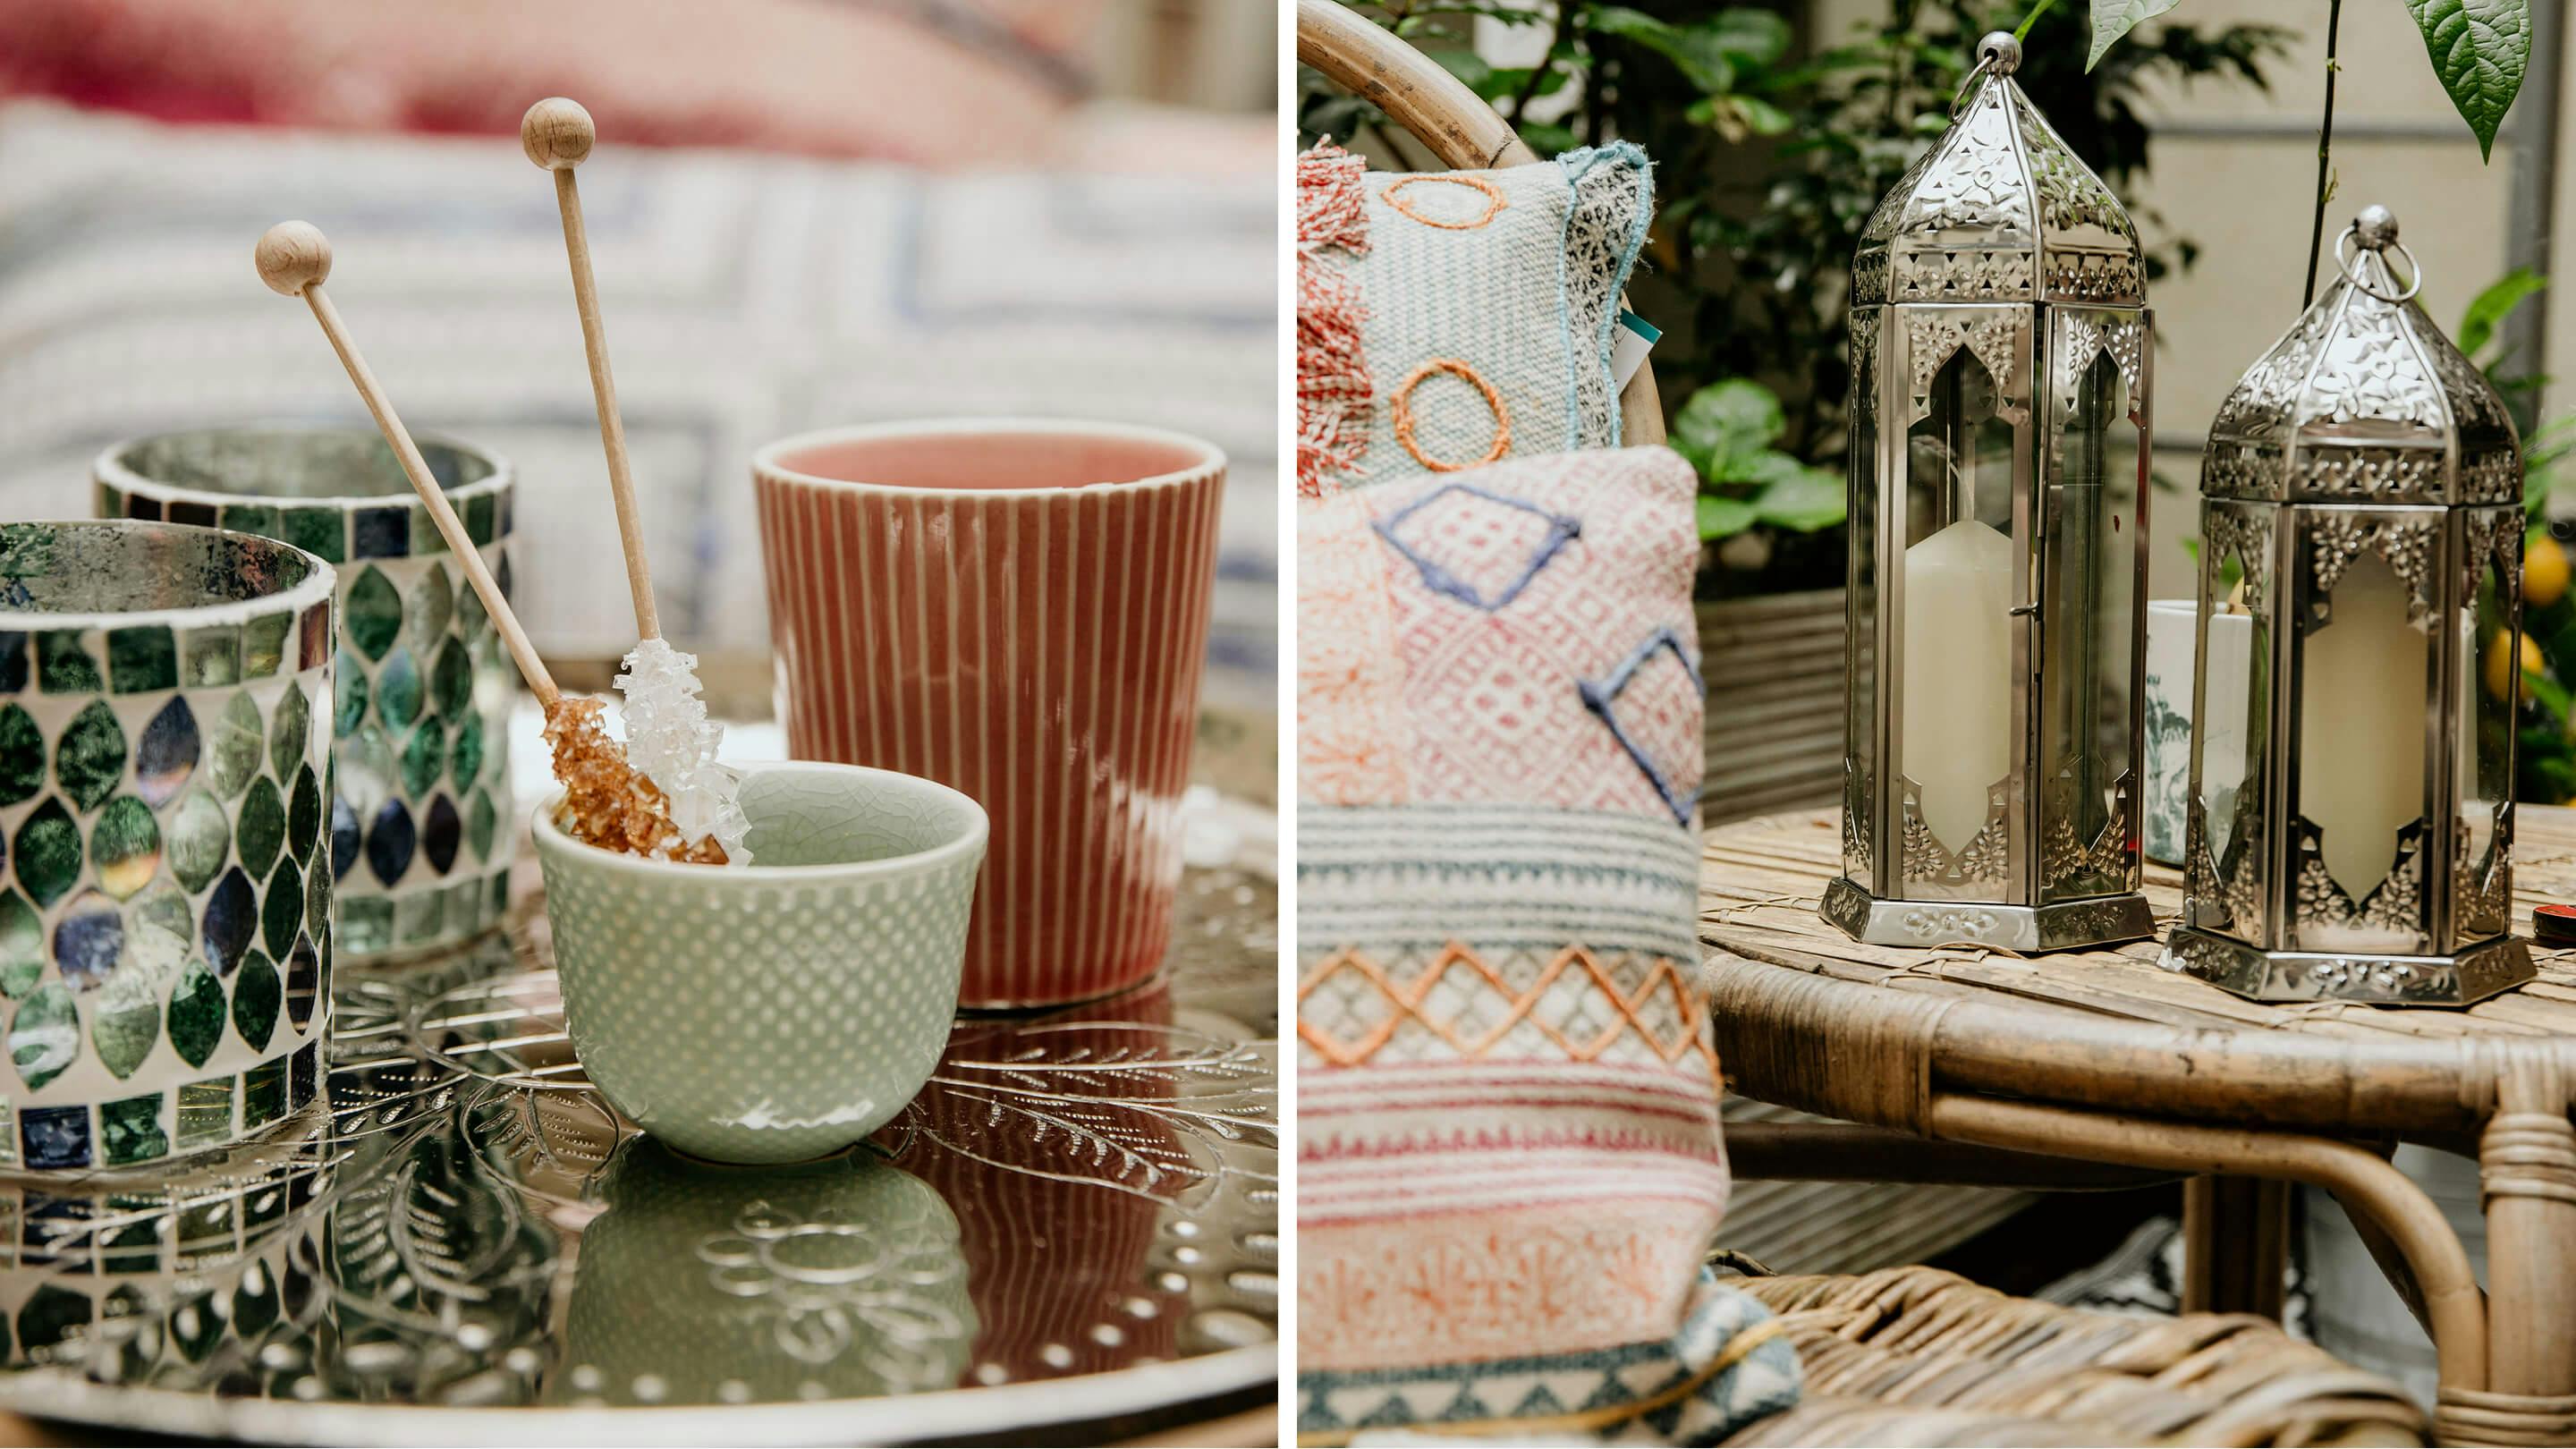 Becher zum Tee Trinken, Windlichter in Blautönen (links) und Windlichter im orientalischen Stil (Marke: Butlers).